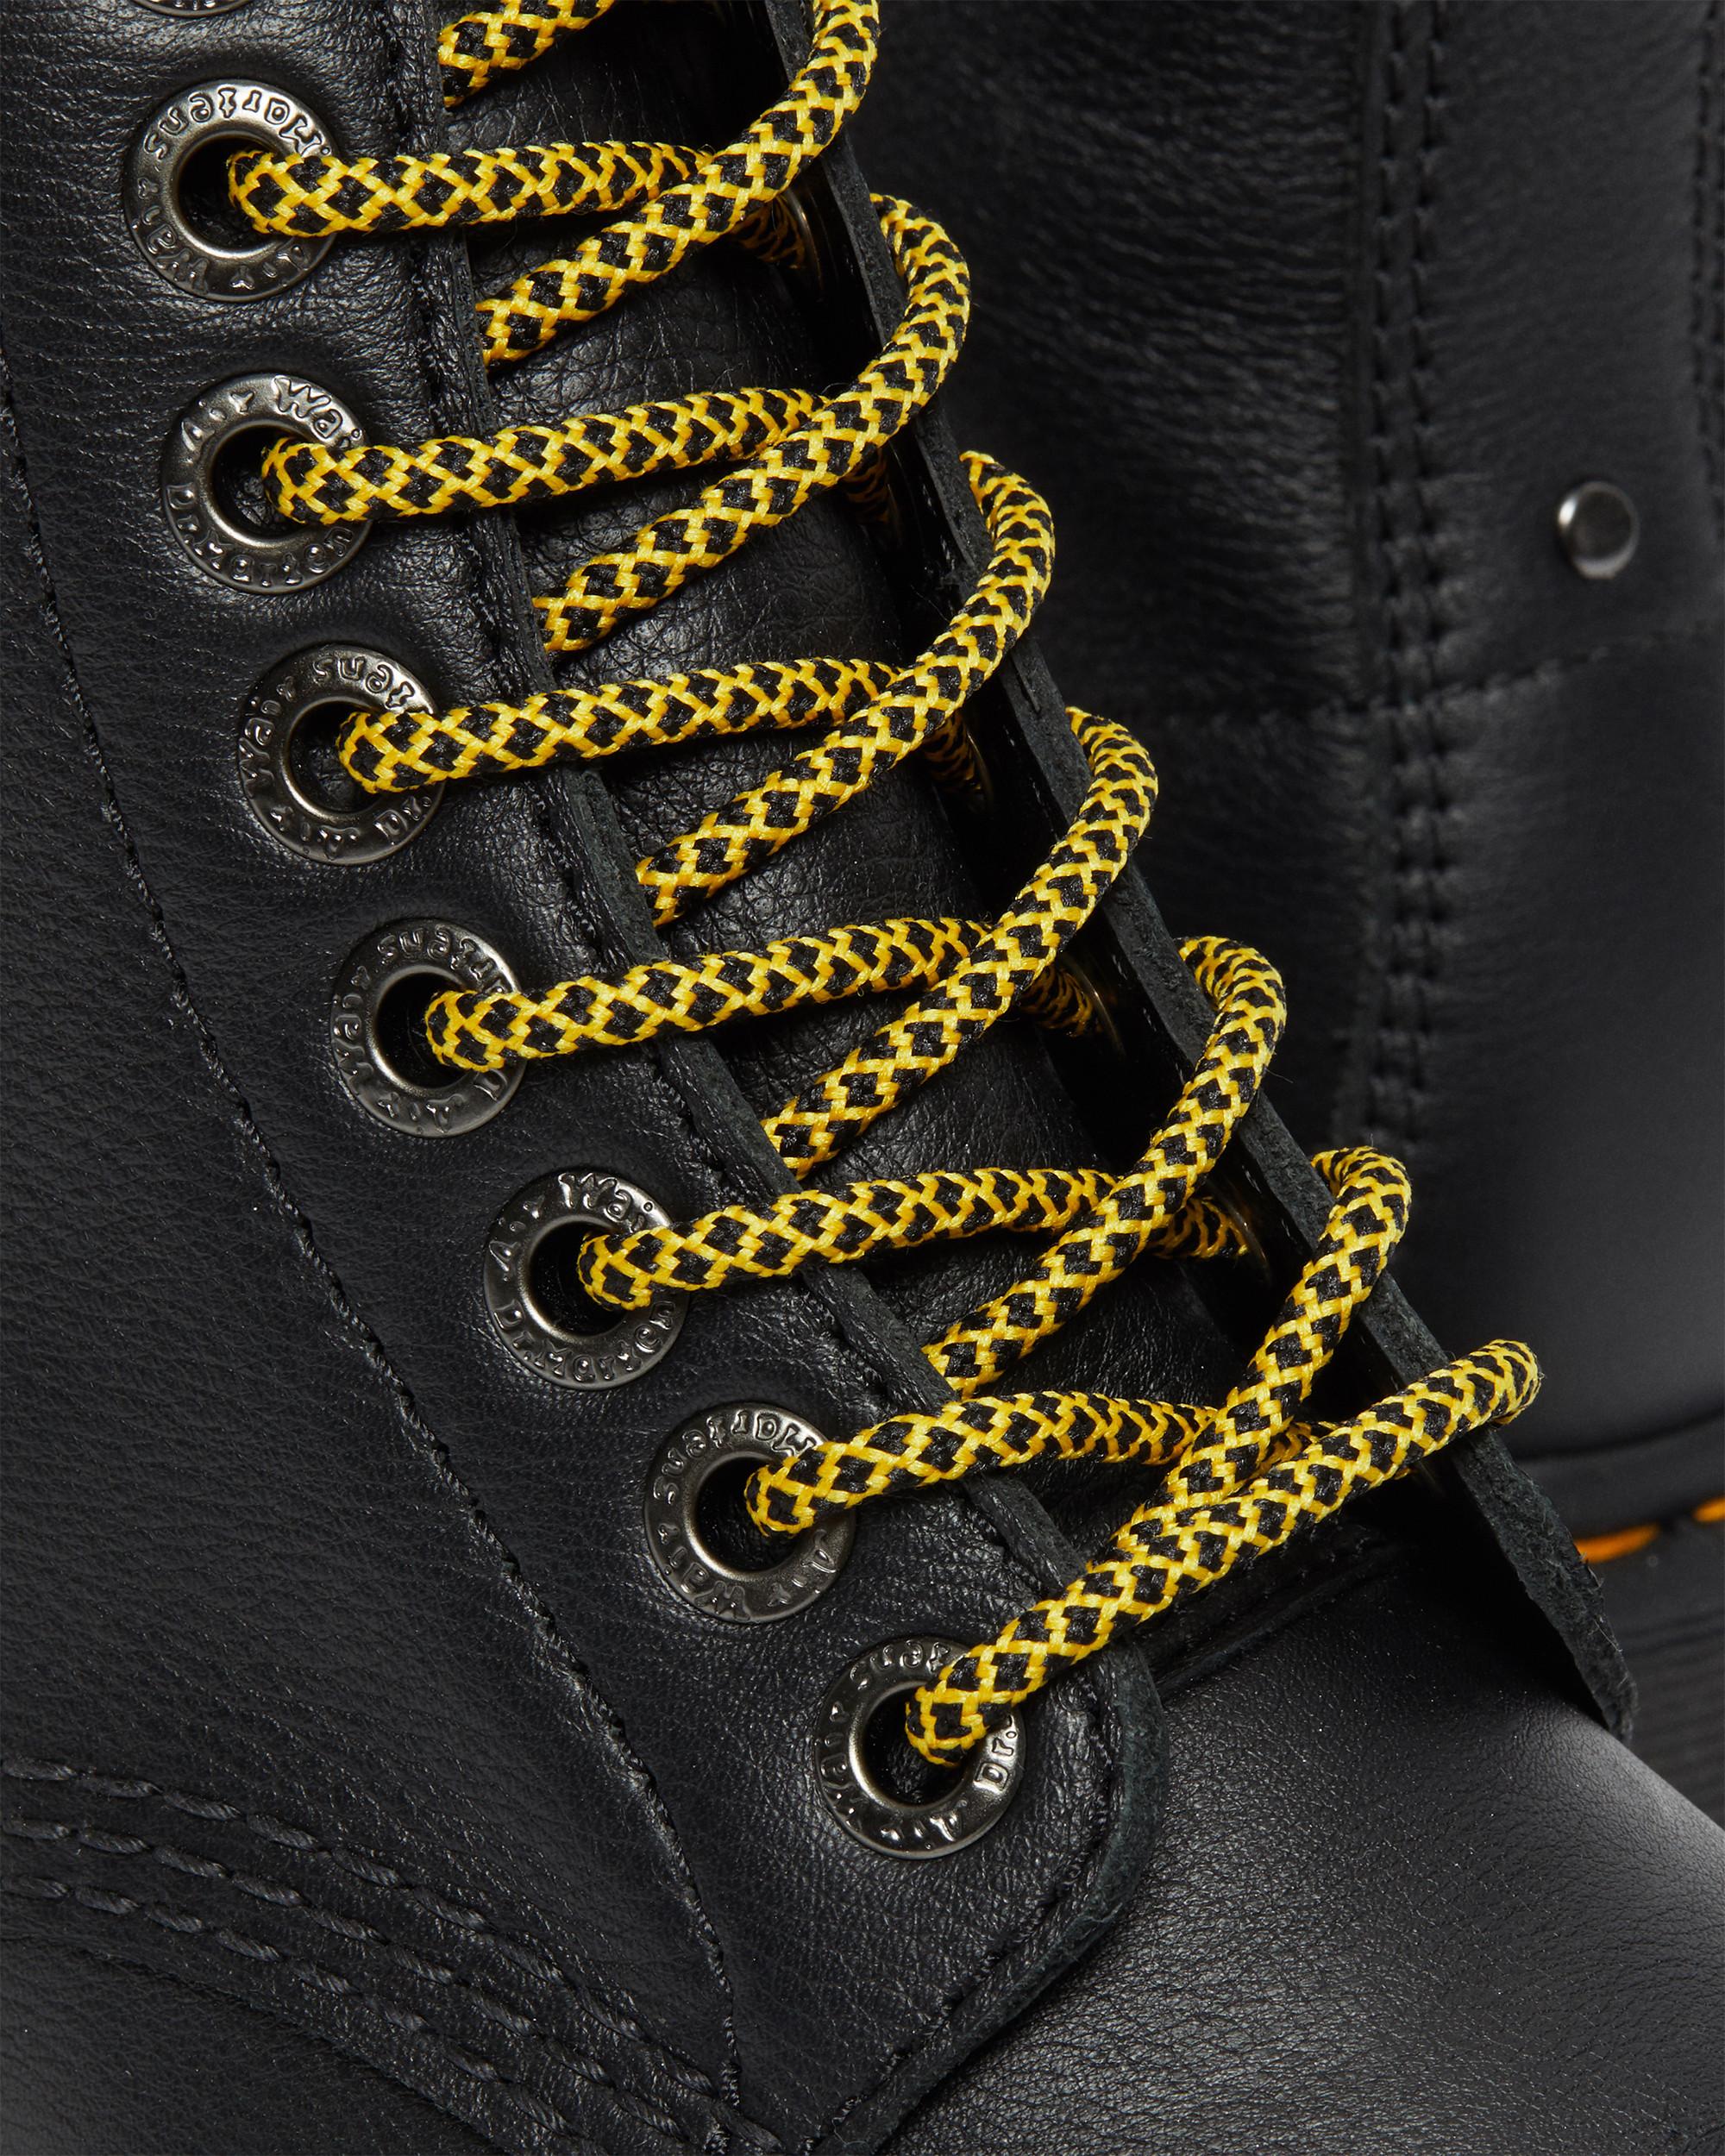 Sinclair Max Pisa Leather Platform Boots, Black | Dr. Martens